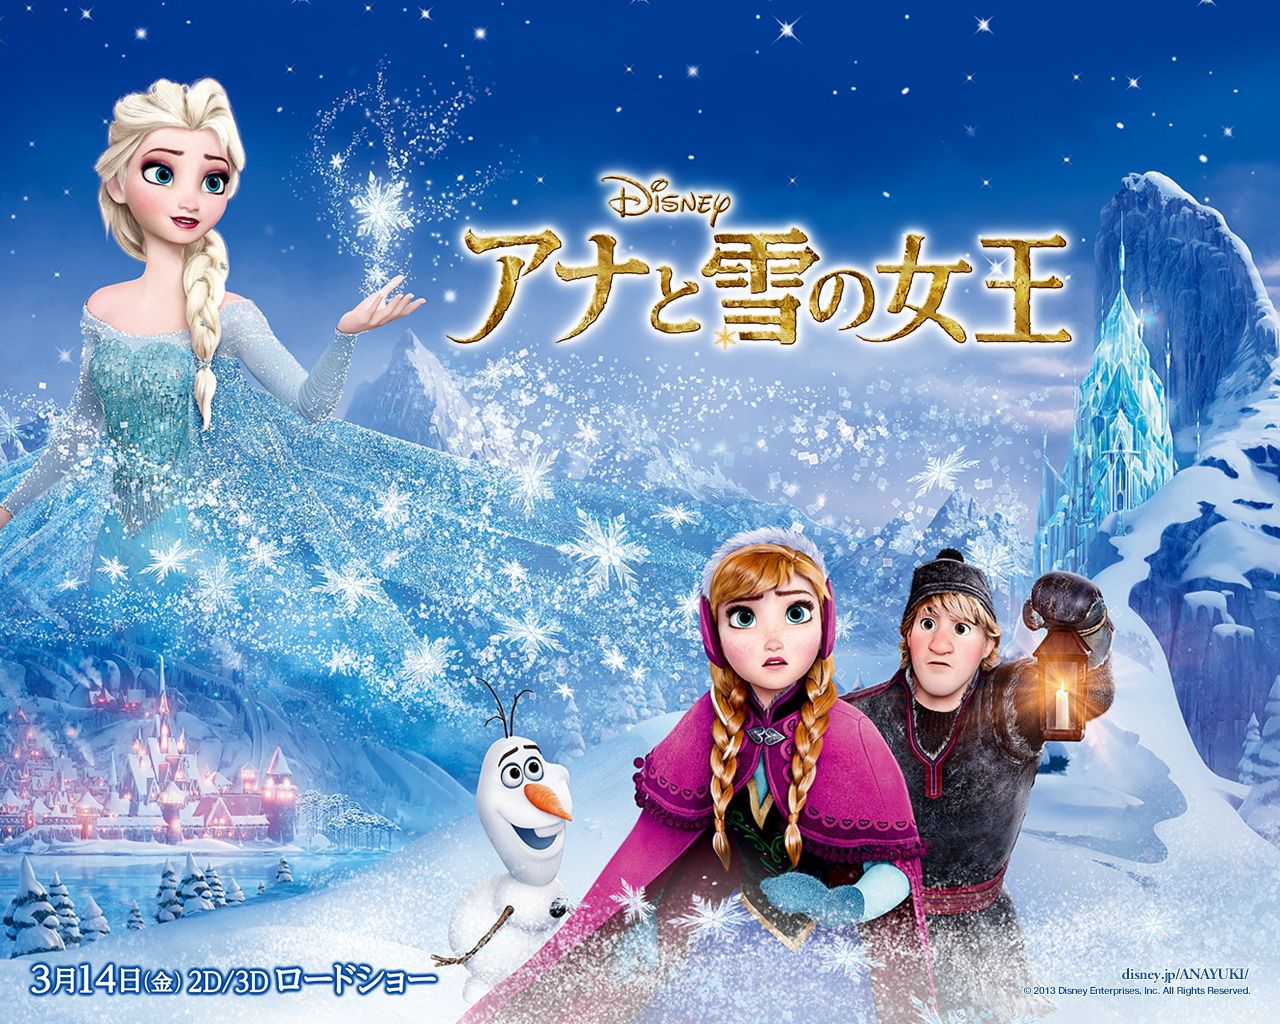 Frozen Wallpaper - Elsa and Anna Wallpaper (36185861) - Fanpop